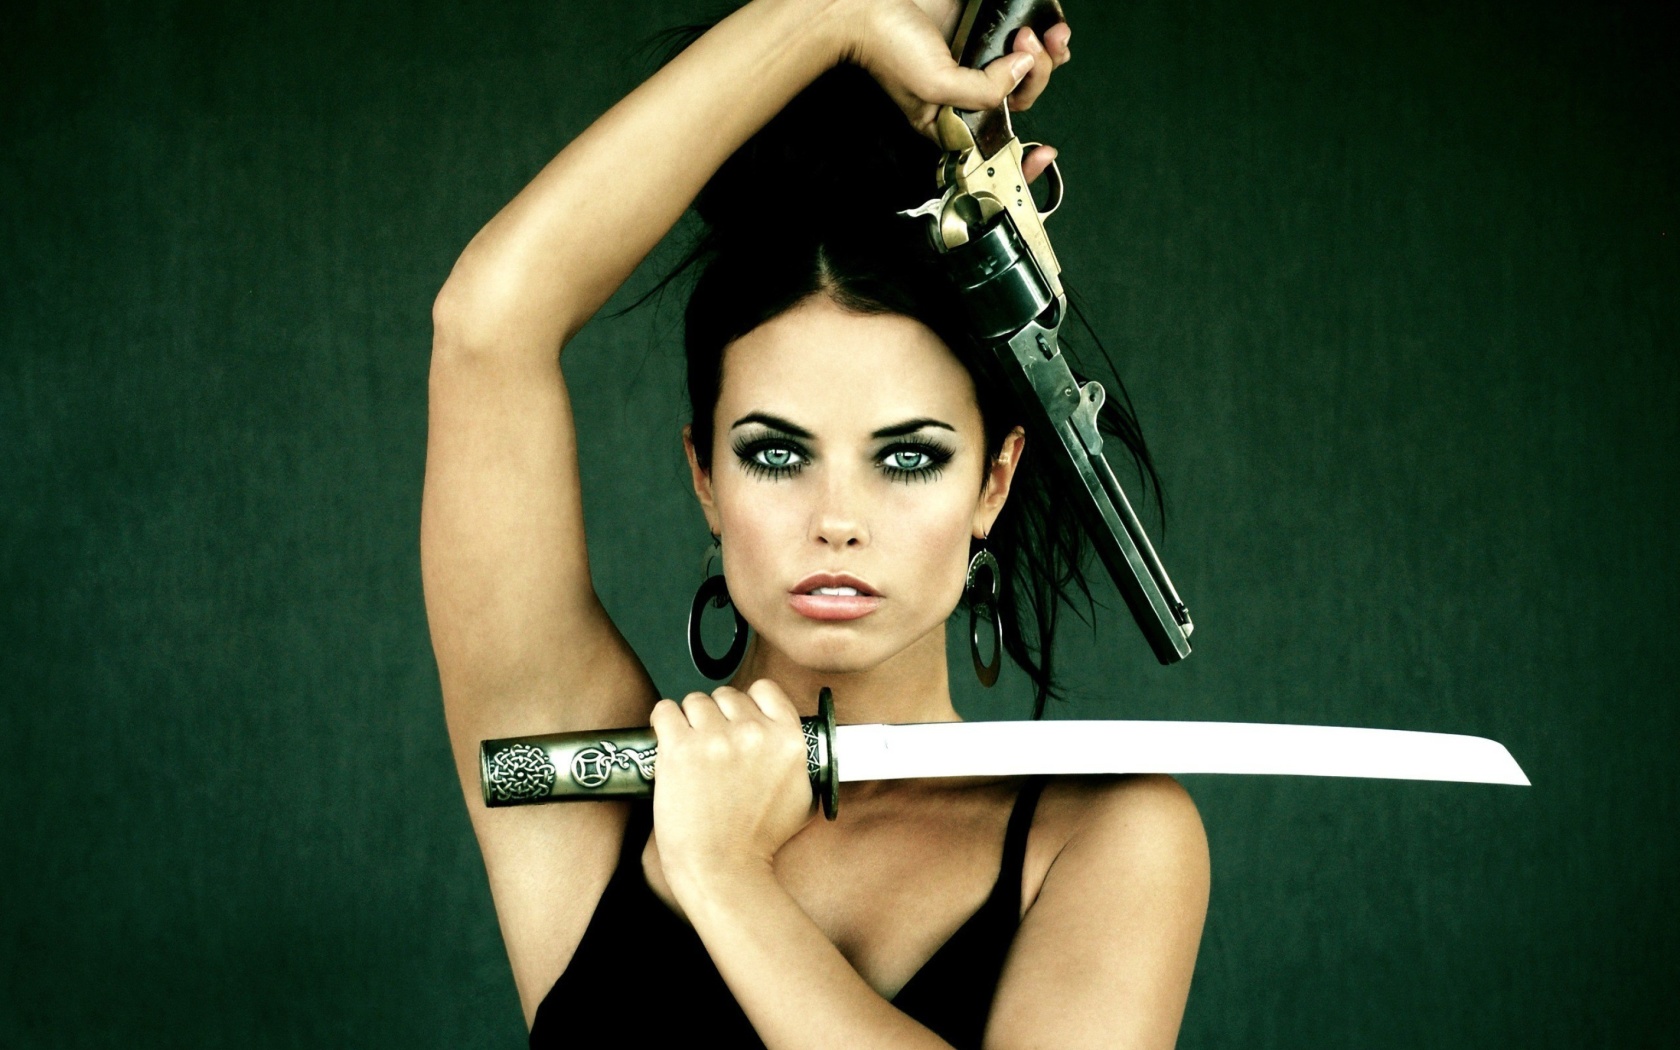 Warrior girl with swords wallpaper 1680x1050